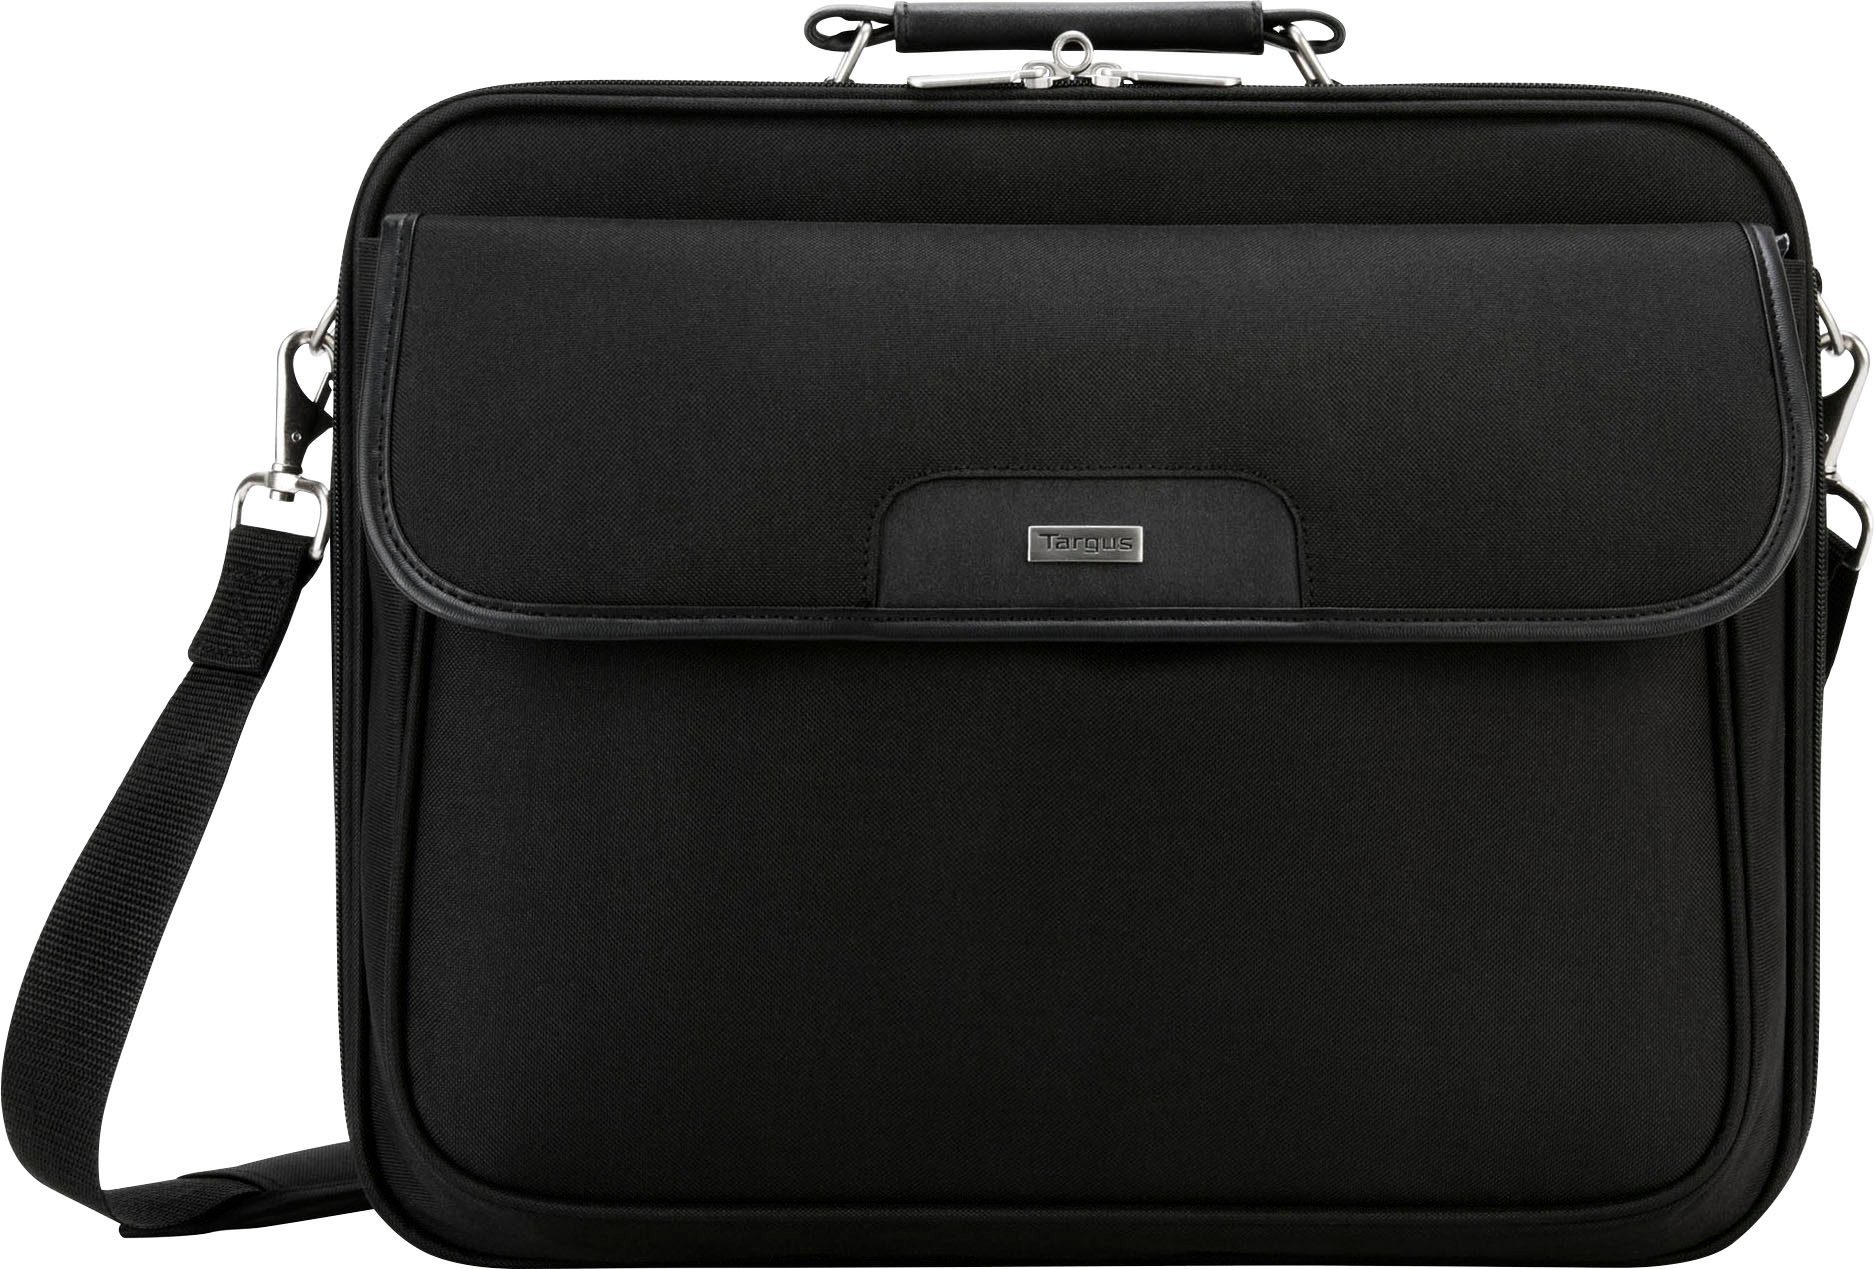 Targus Laptoptasche Notepac 15.6 Clamshell Rutschfeste, zur rechteckige Gummifüße Laptop Stoßdämpfung Case